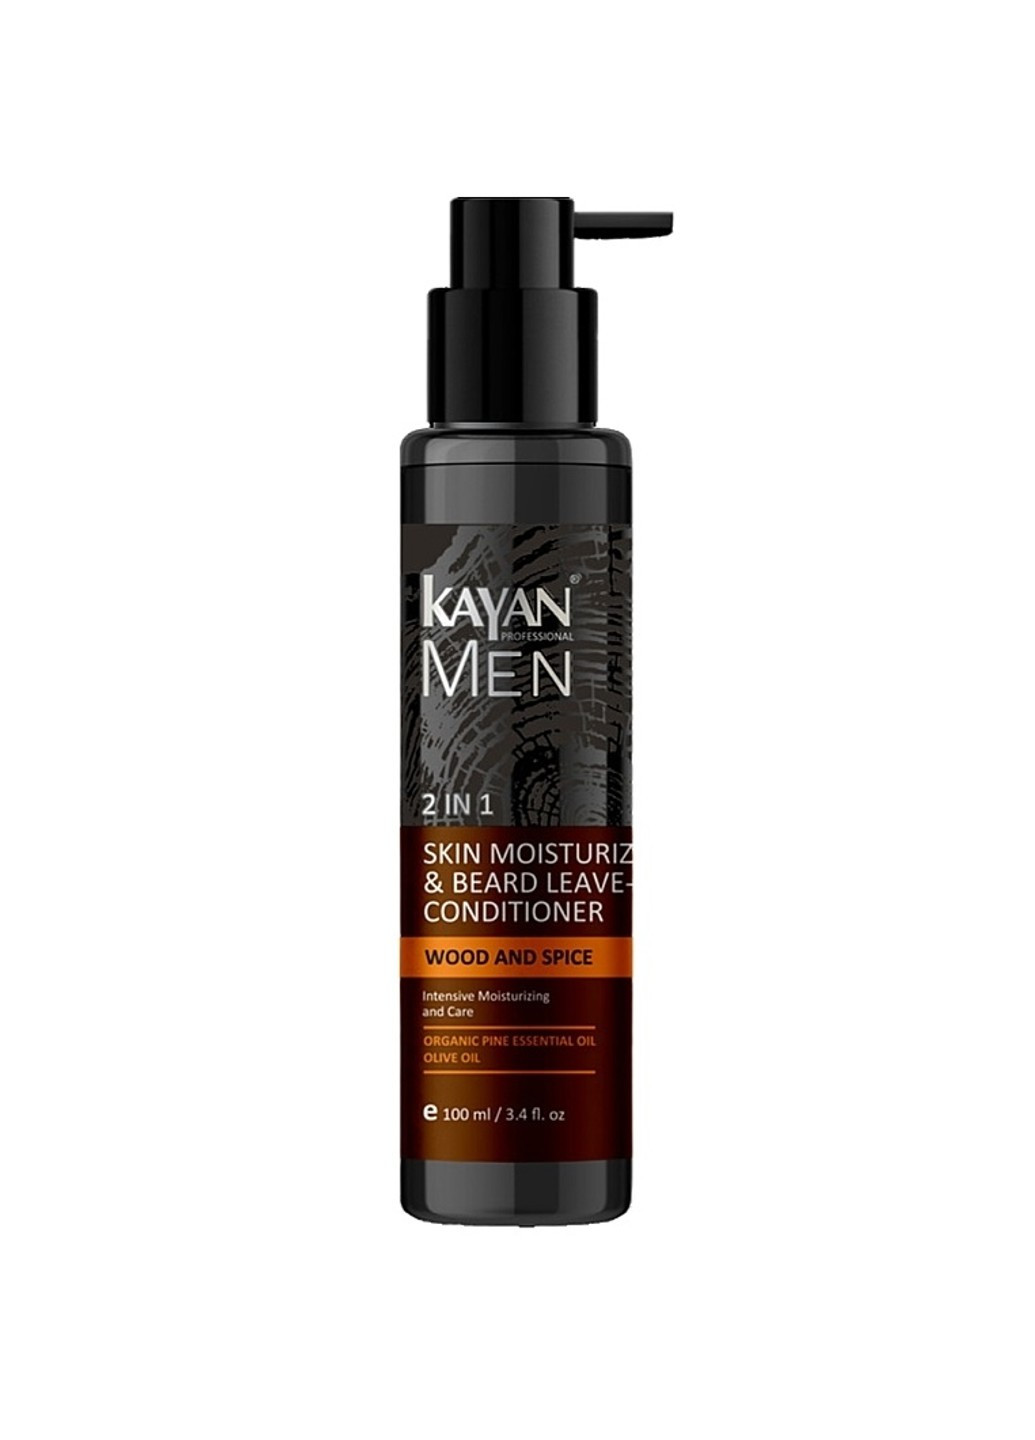 Увлажняющий бальзам для лица и бороды Kayan Men 100 мл Kayan Professional (276844040)